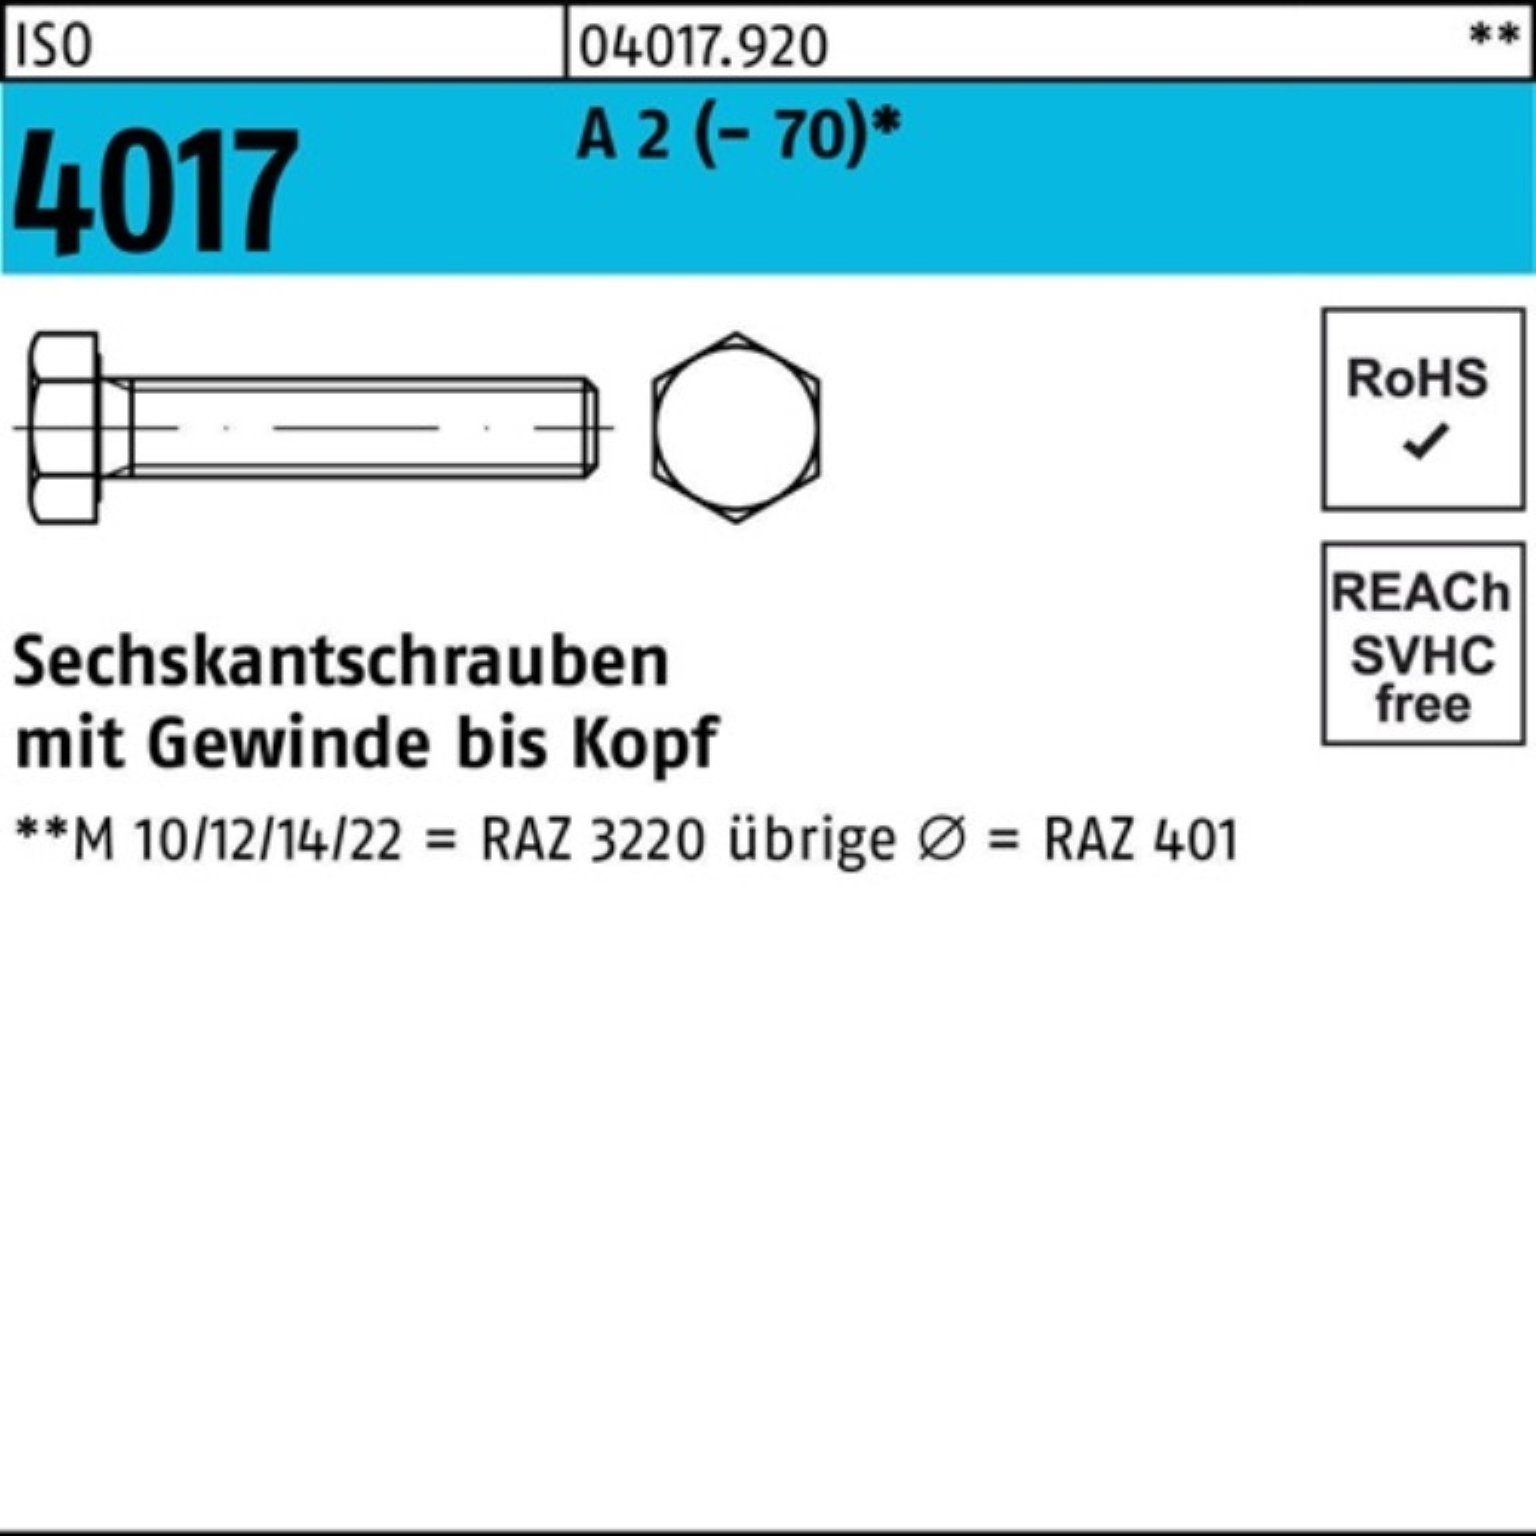 Bufab Sechskantschraube 100er Pack Sechskantschraube ISO 4017 VG M16x 90 A 2 (70) 25 Stück